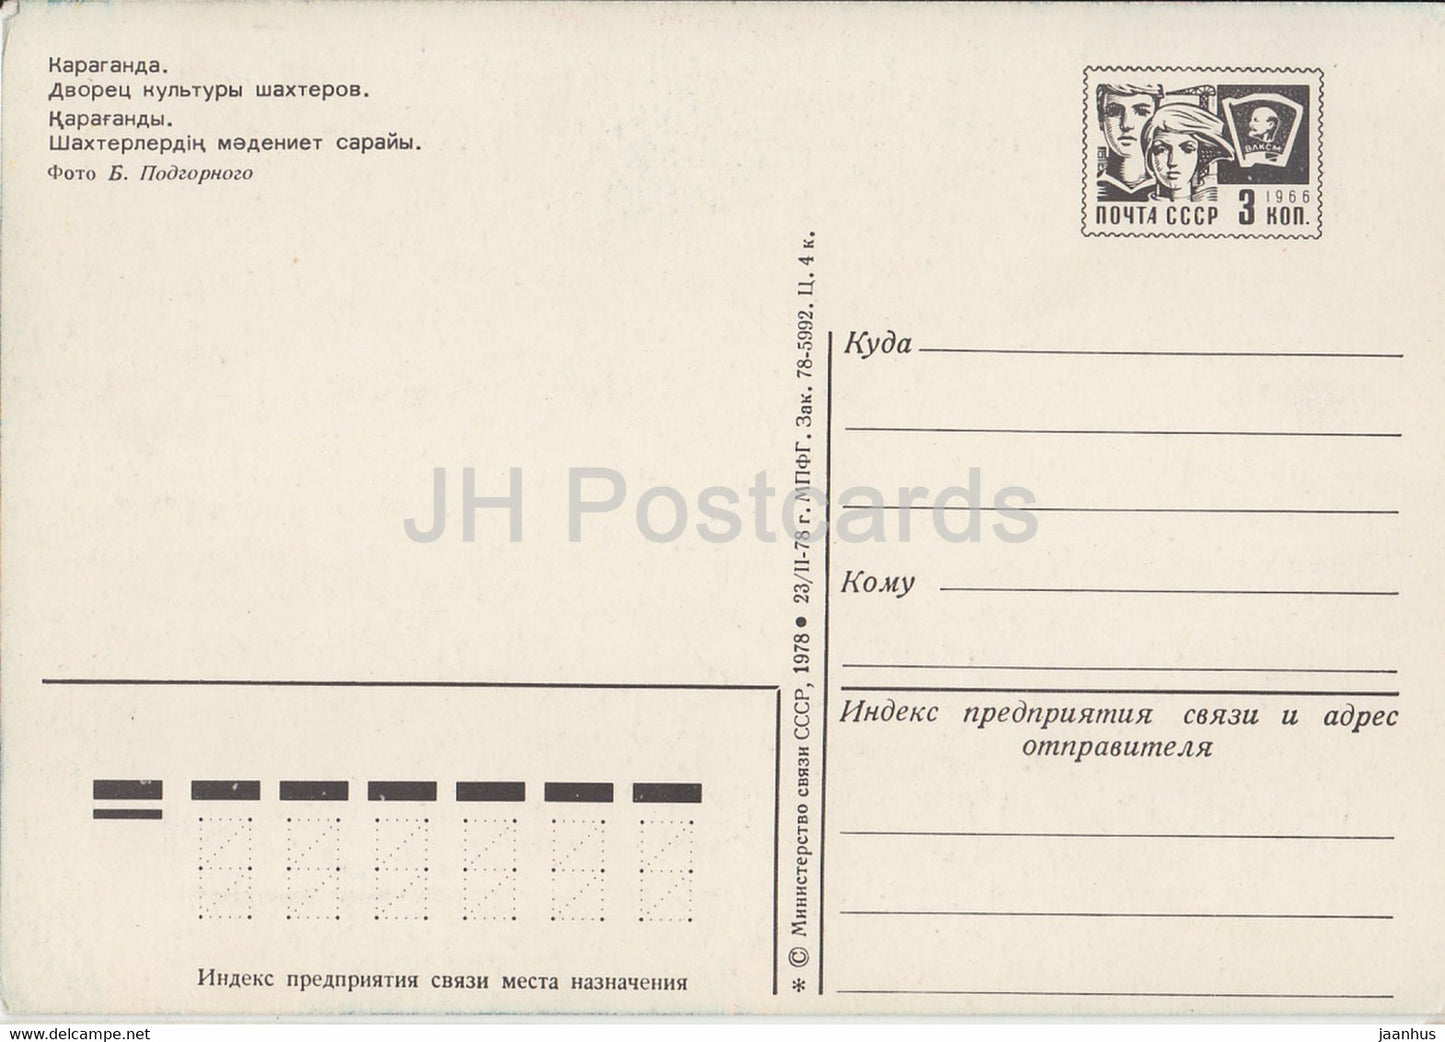 Karaganda - Karagandy - Palais de la Culture des Mineurs - entier postal - 1978 - Kazakhstan URSS - inutilisé